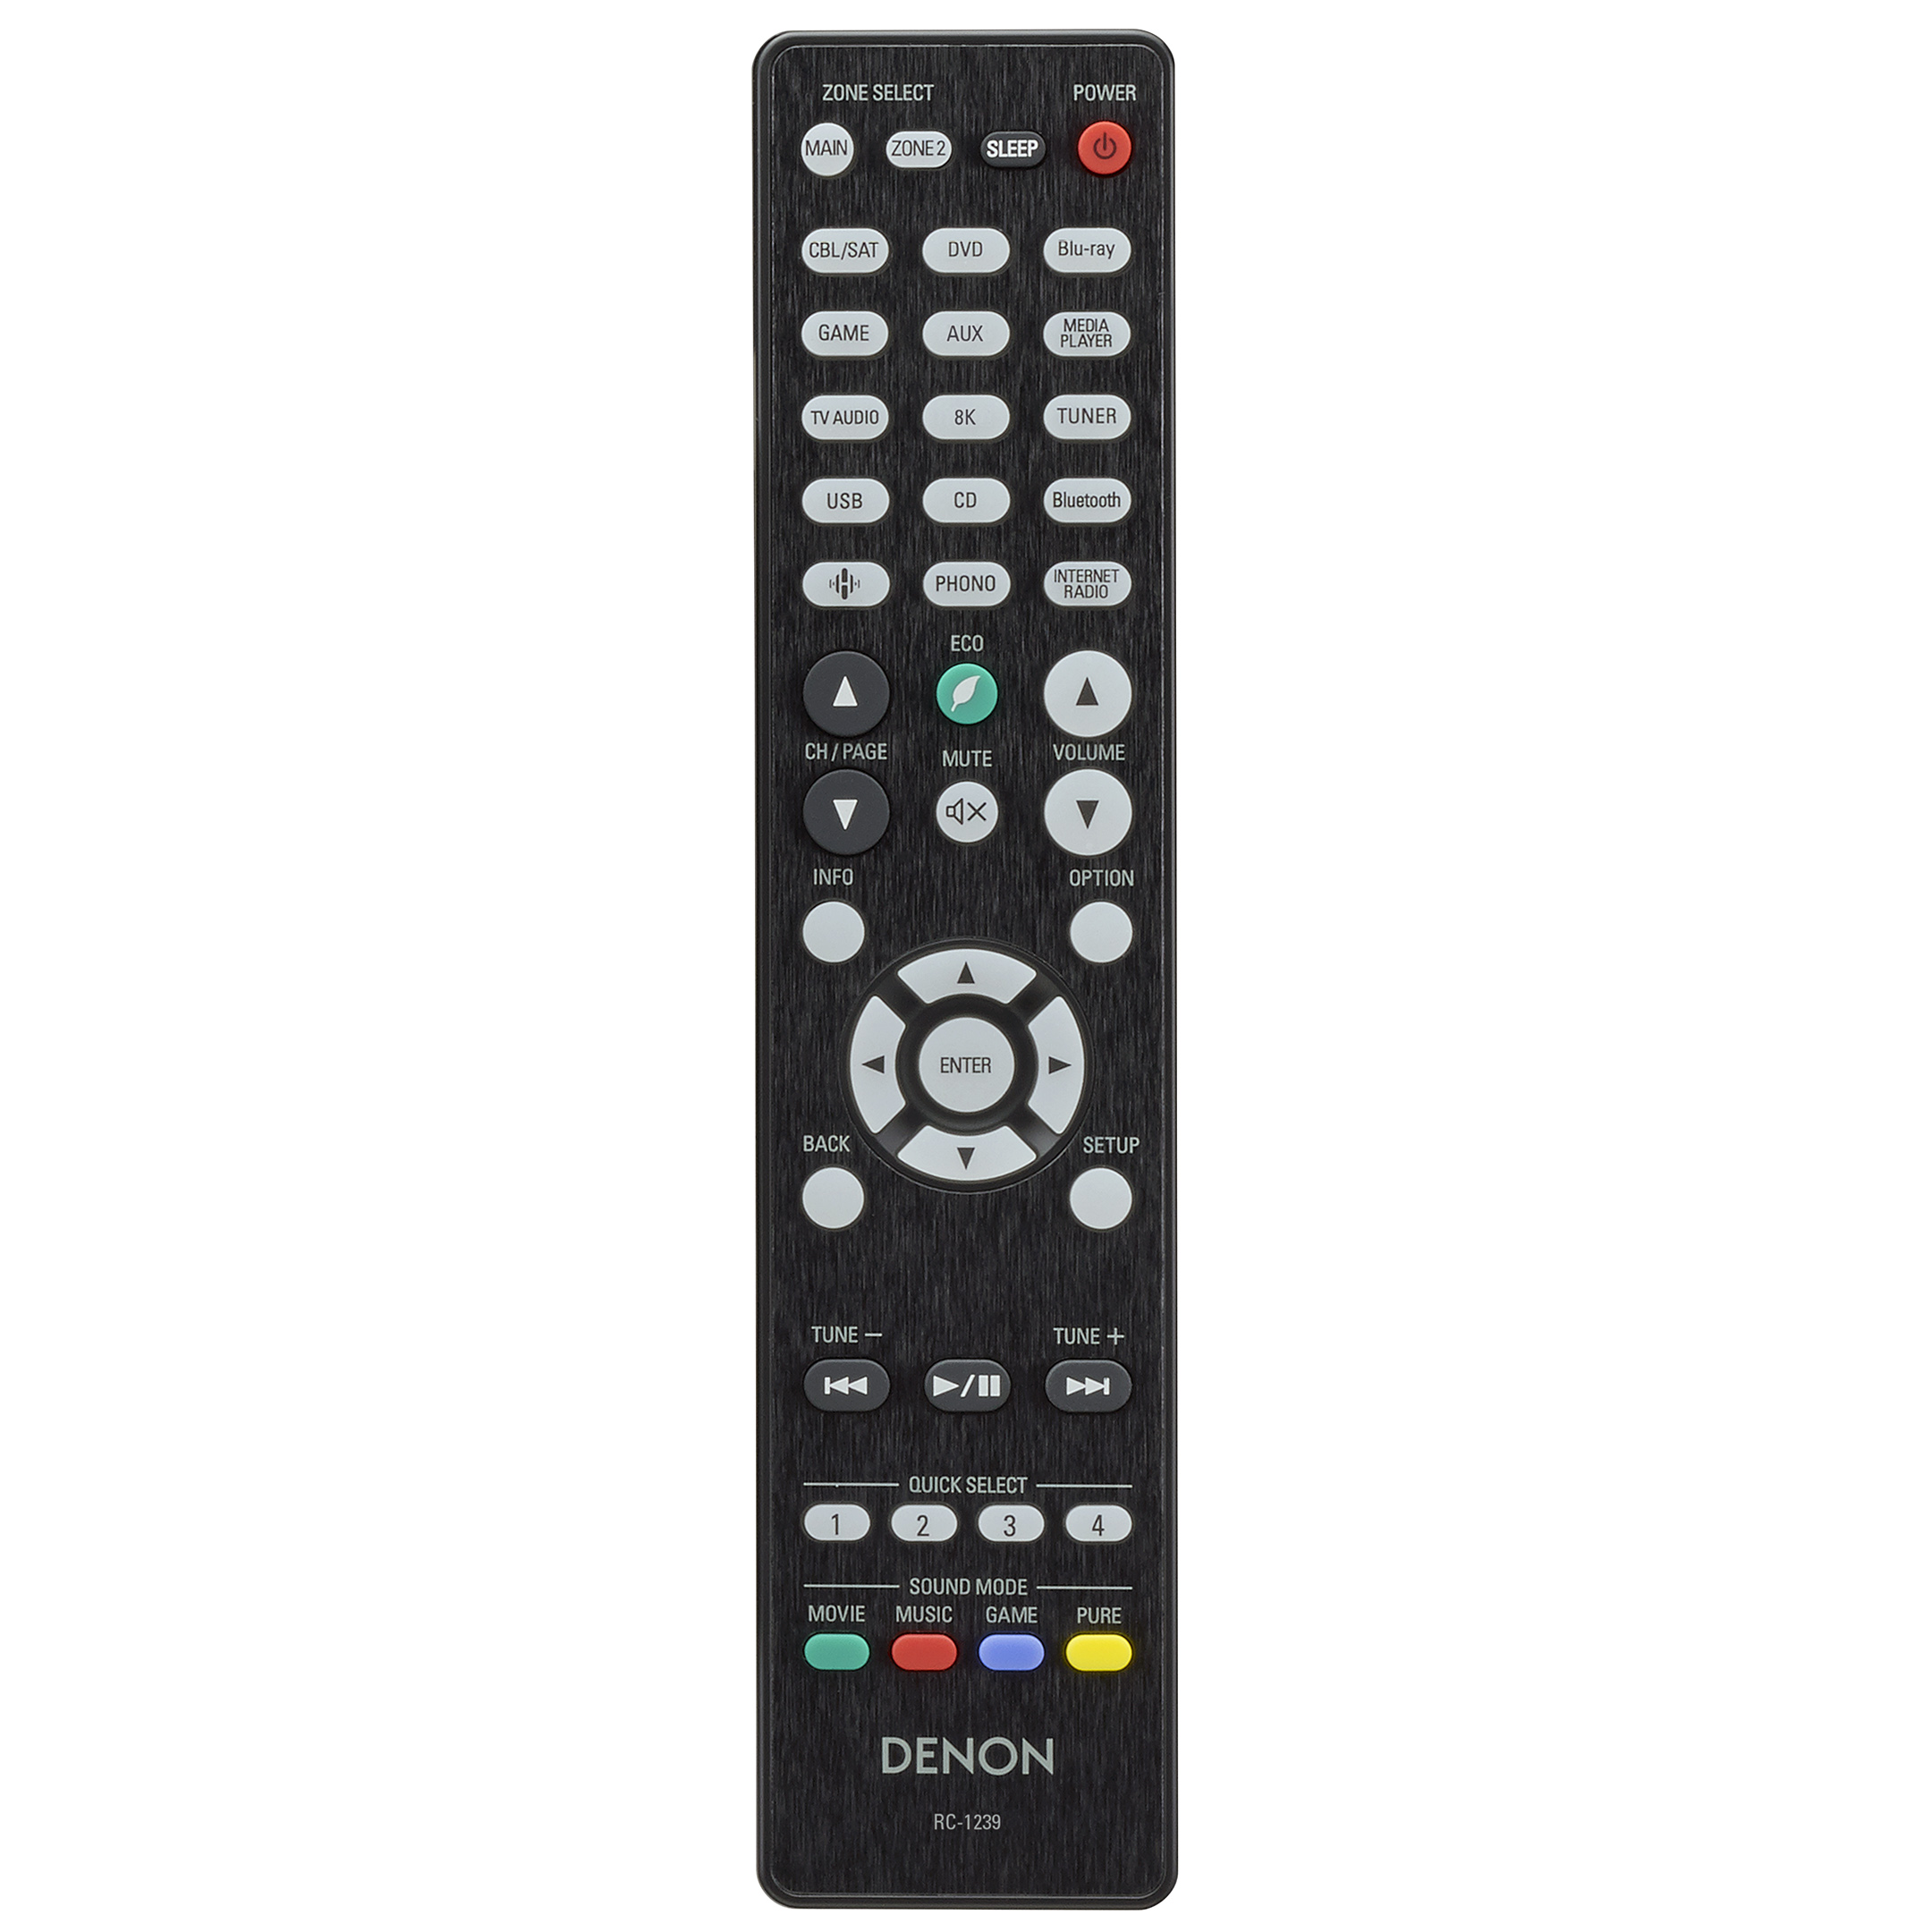 Denon AVC-X3700H remote